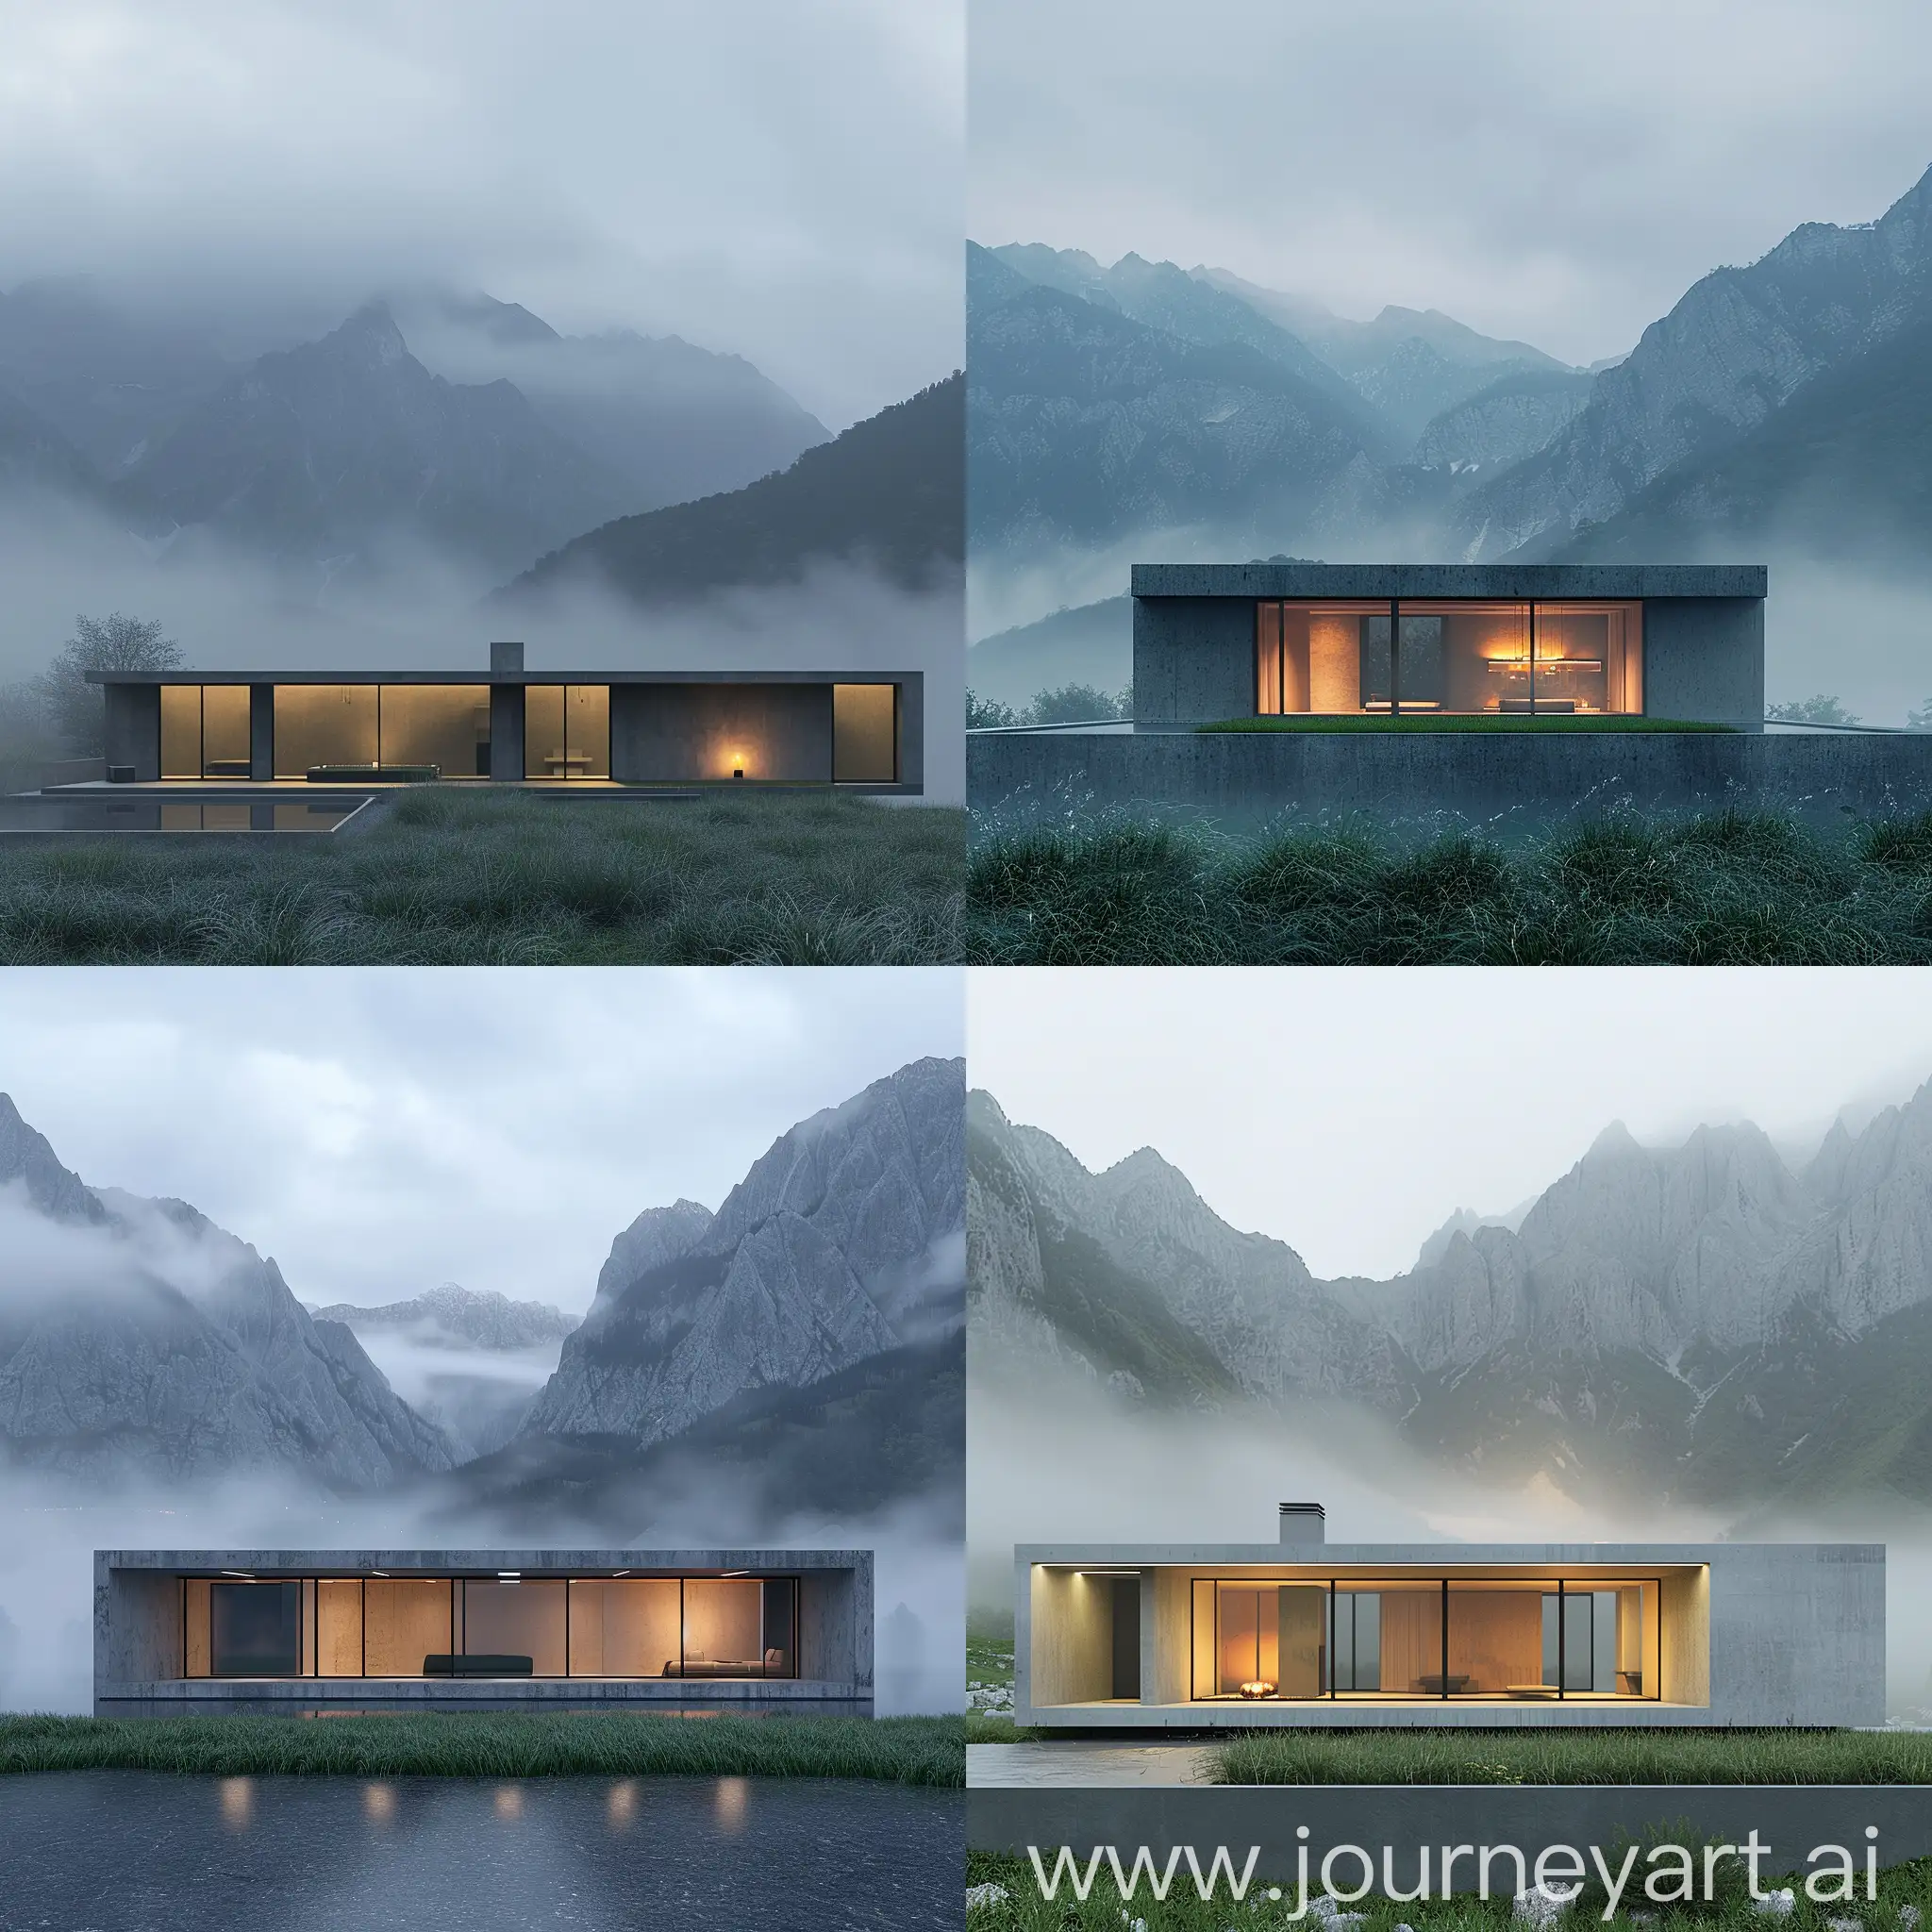 3д визуализация, дом на фоне гор, дом прямоугольной формы, трава у дома, внутри дома приглушенные огни, минималистичный дизайн, туман, пасмурно